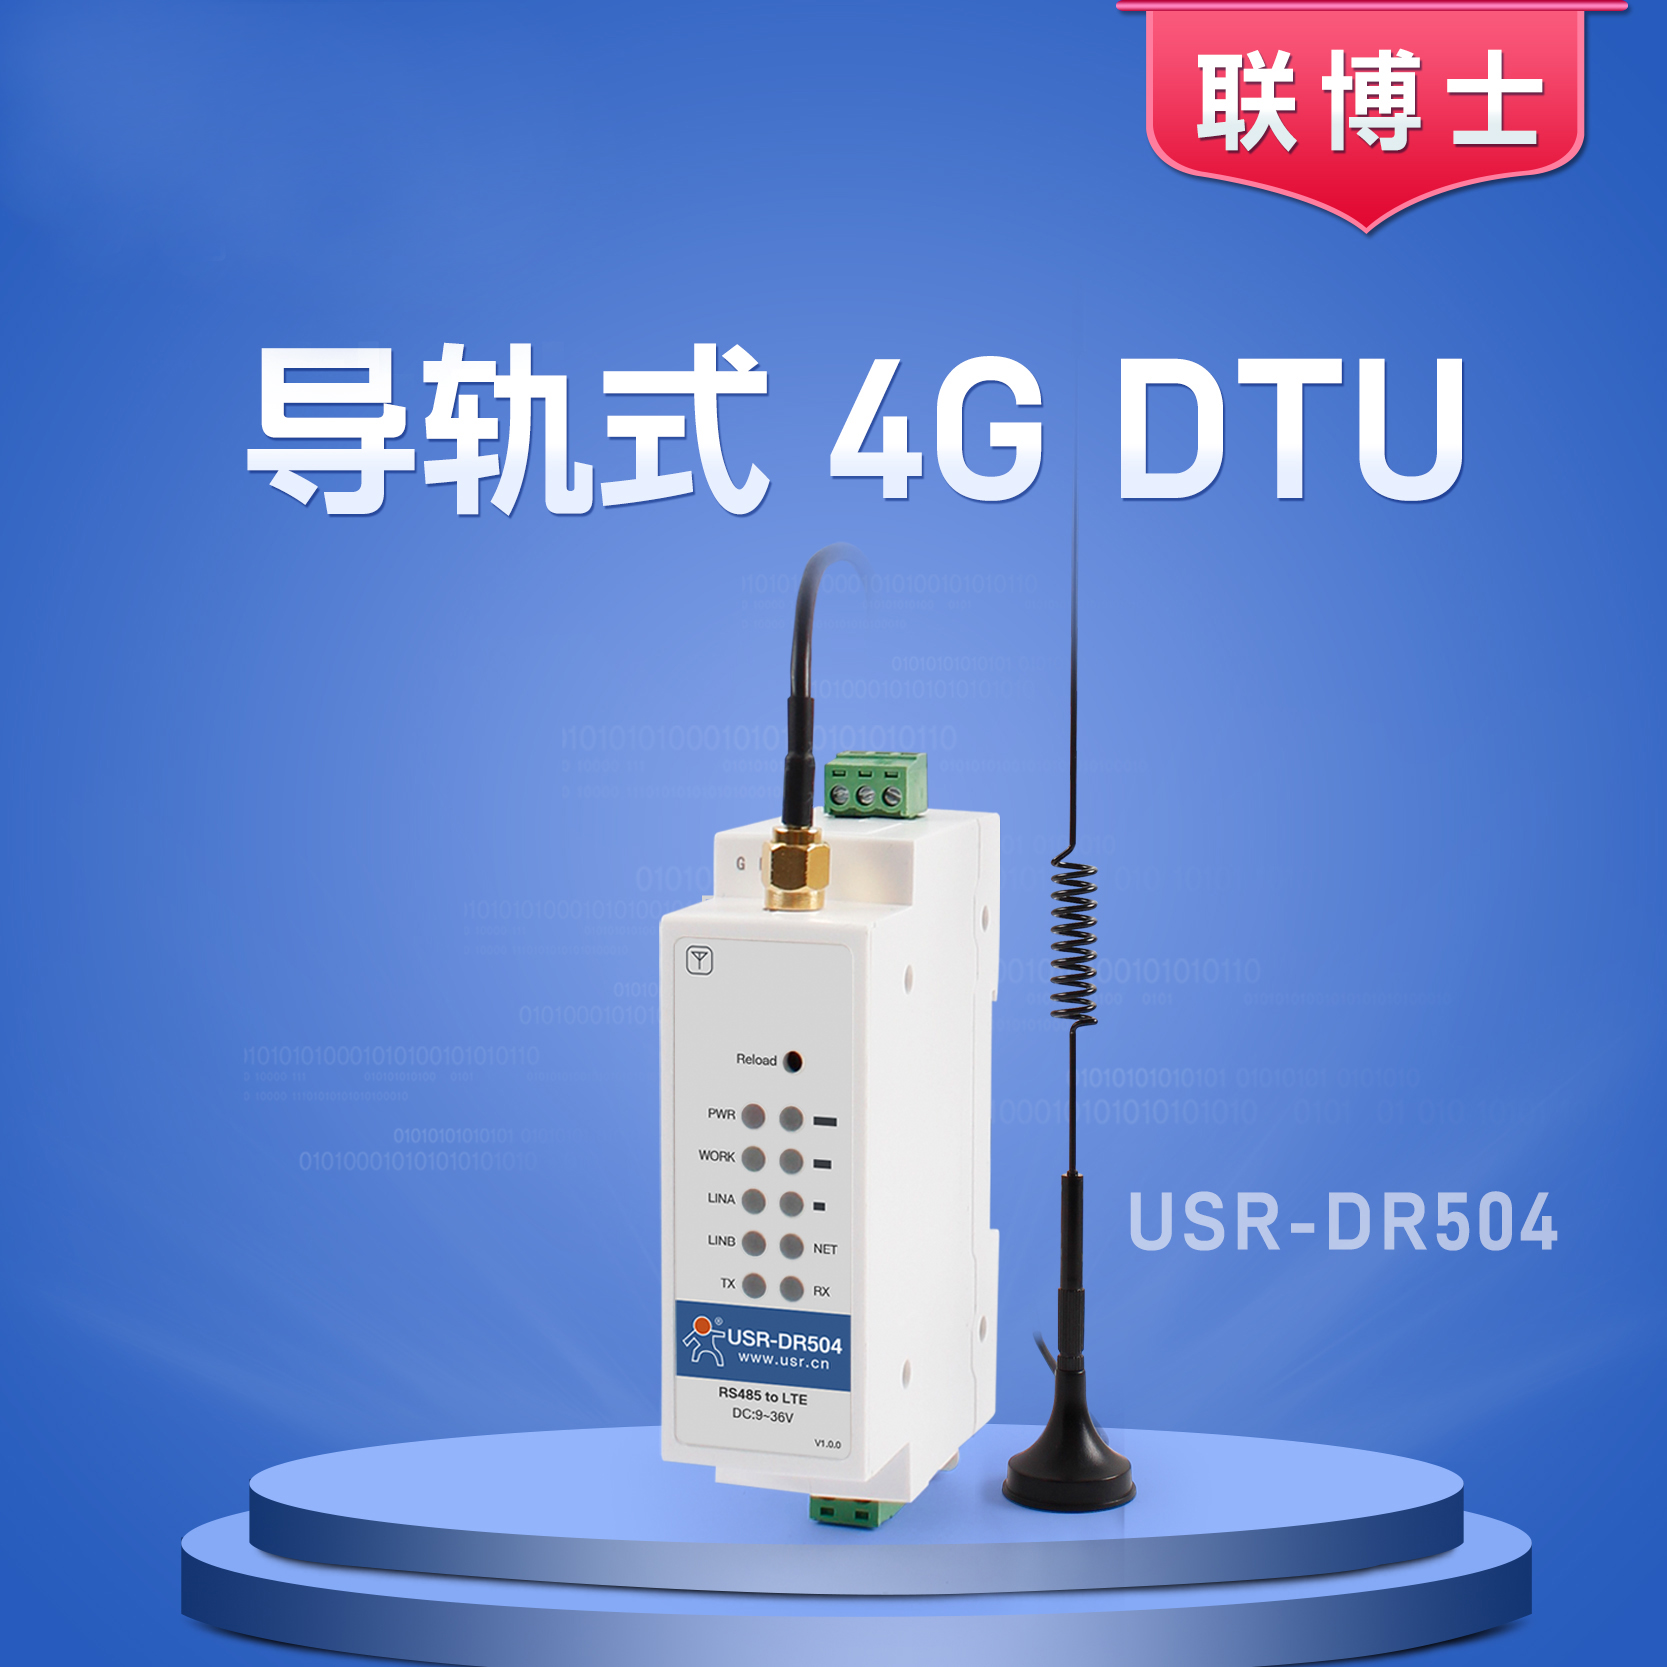 有人物联网 - 联博士系列 4G DTU  USR-DR504图片